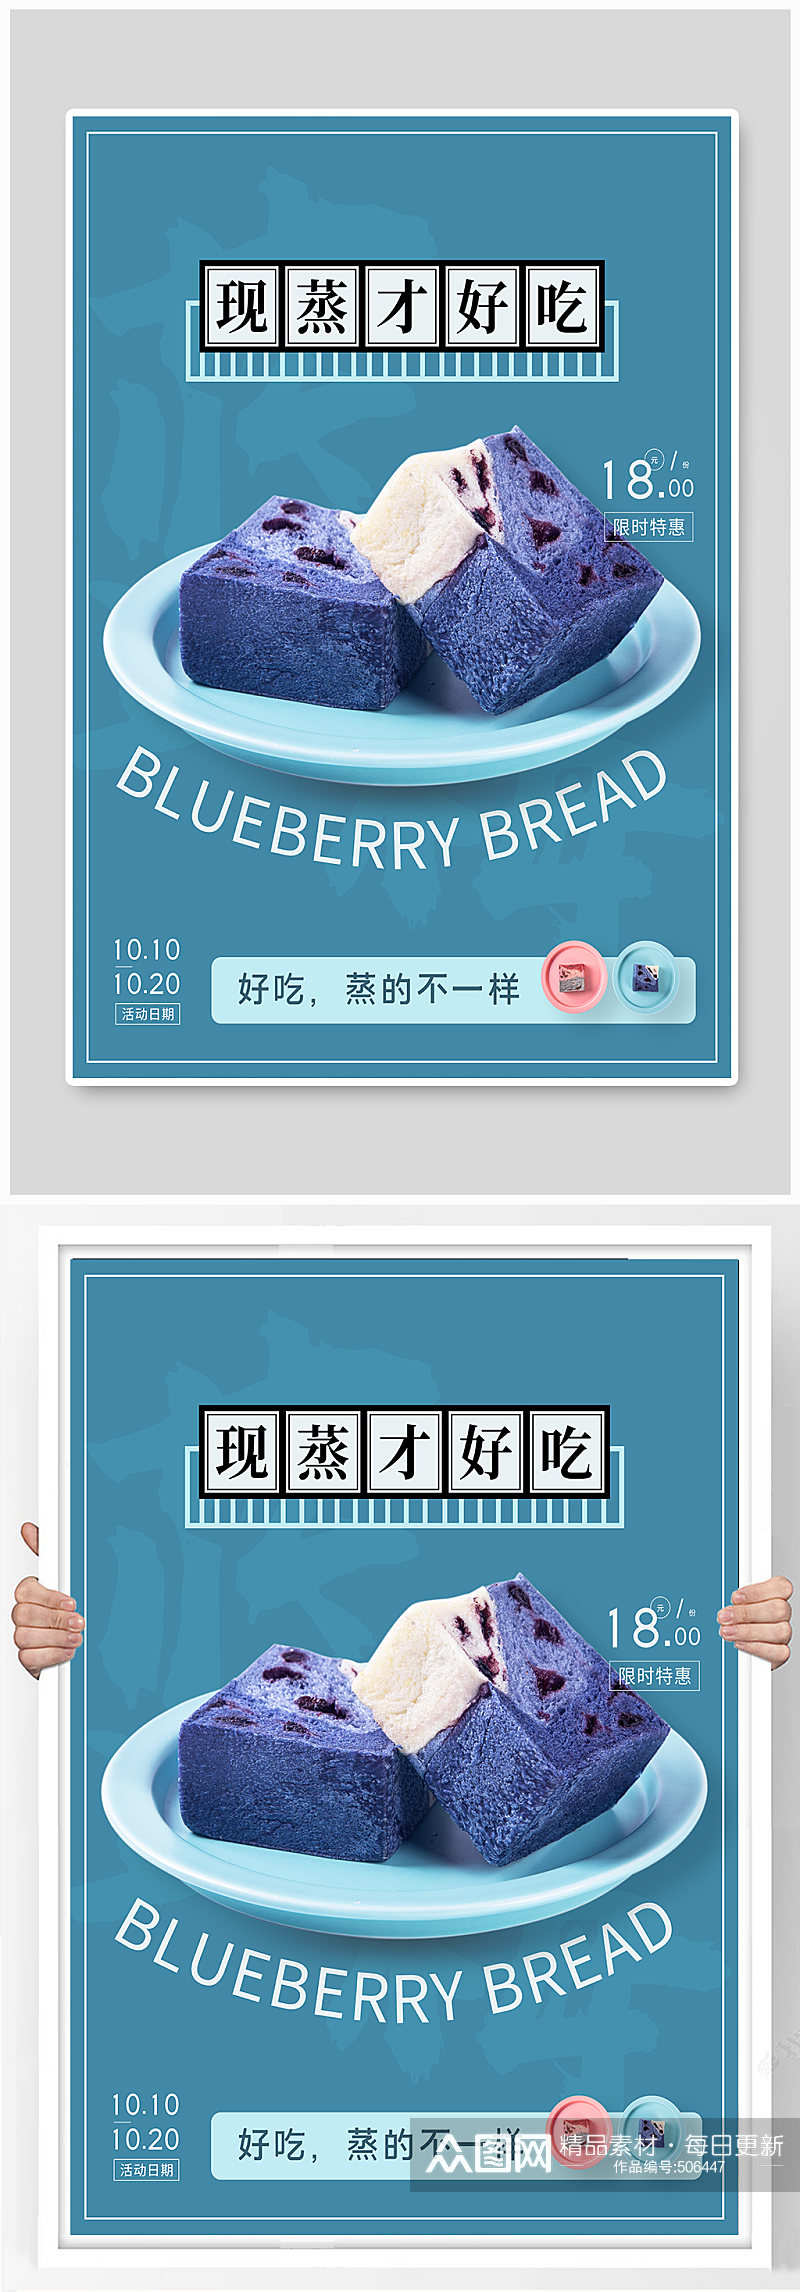 蓝莓面包甜品蛋糕美食海报素材